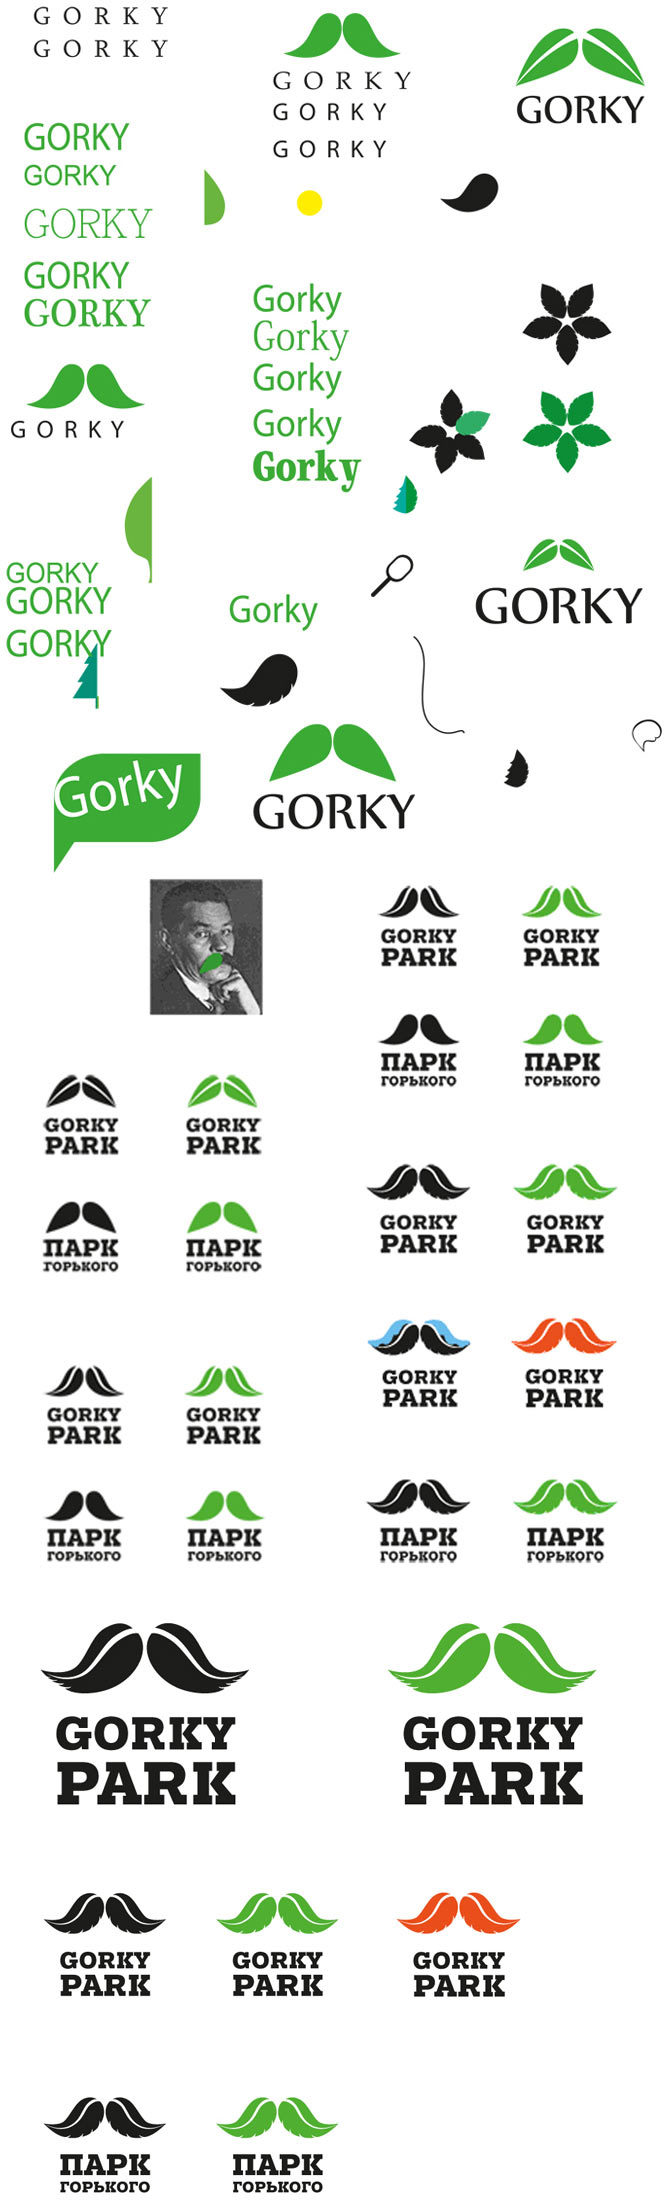 gorky park process 03